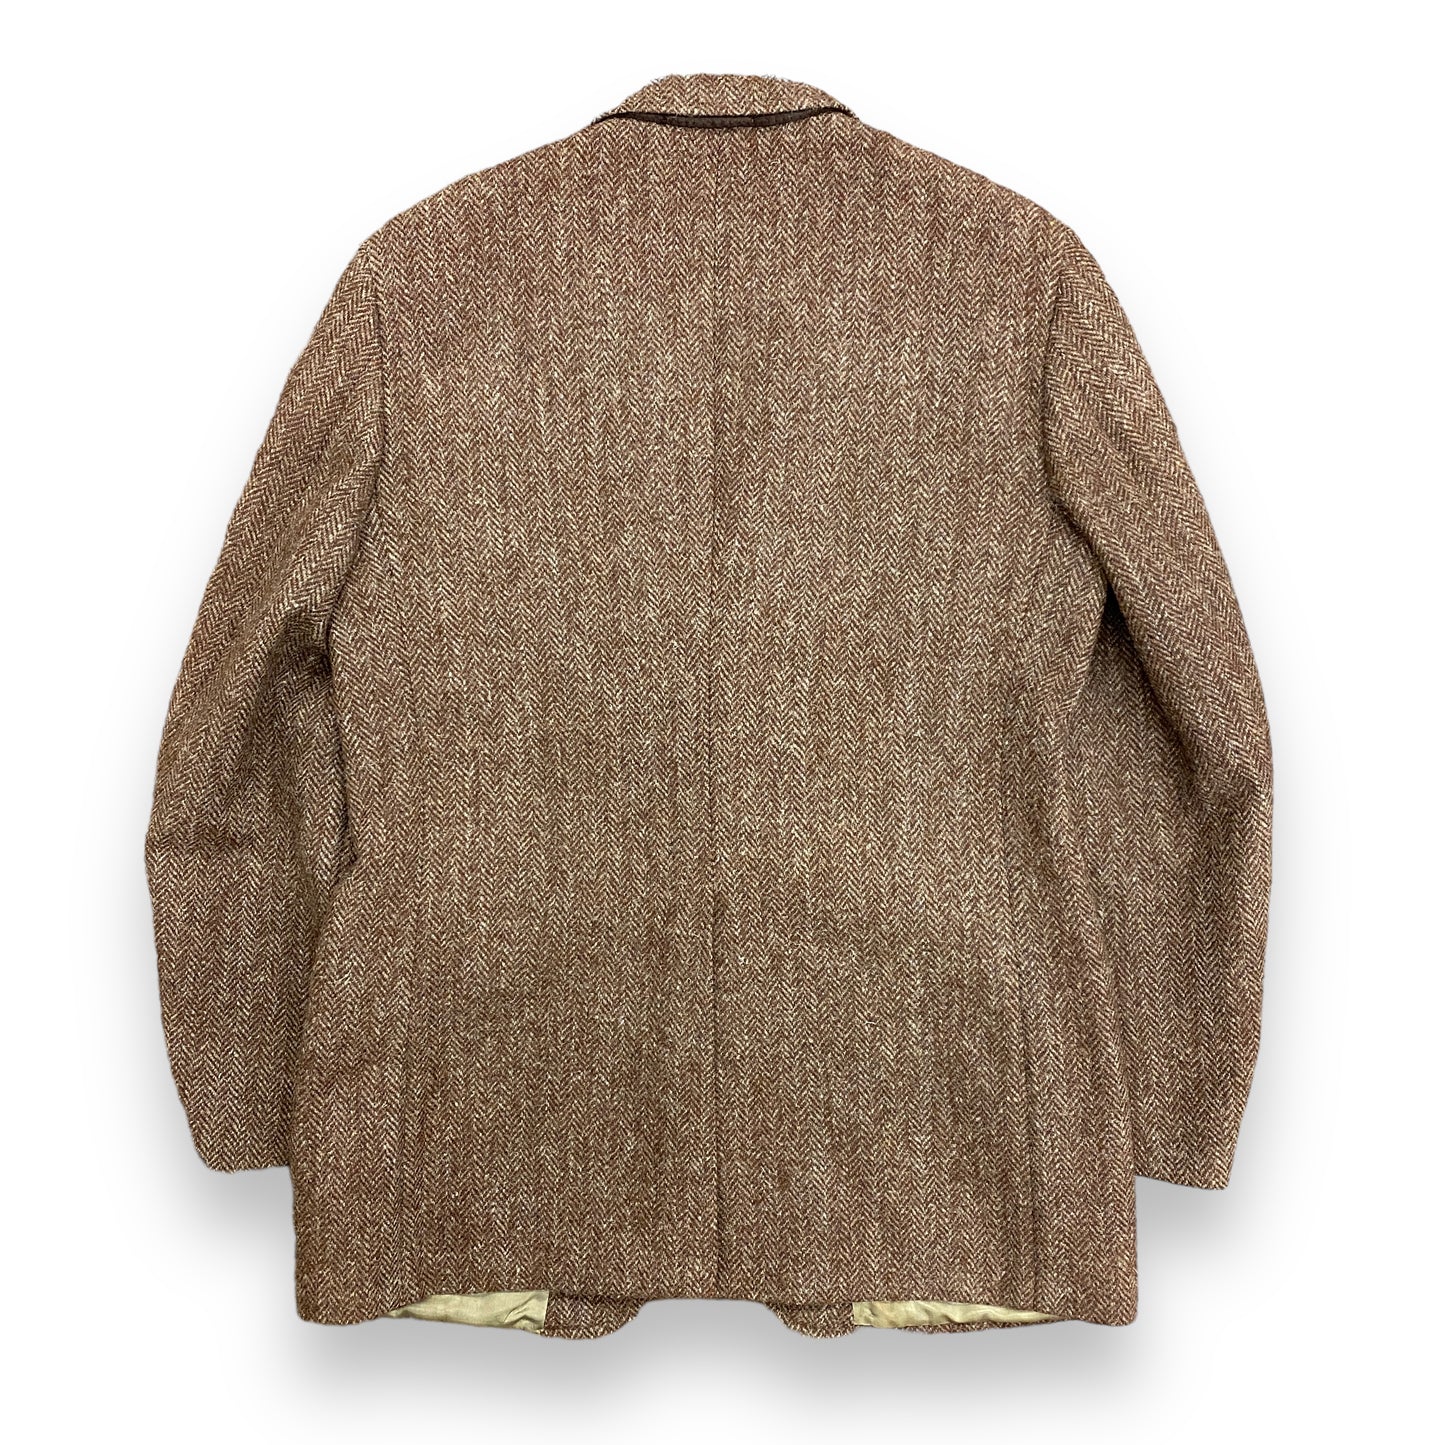 1980s Harris Tweed Brown Wool Jacket - Size Large